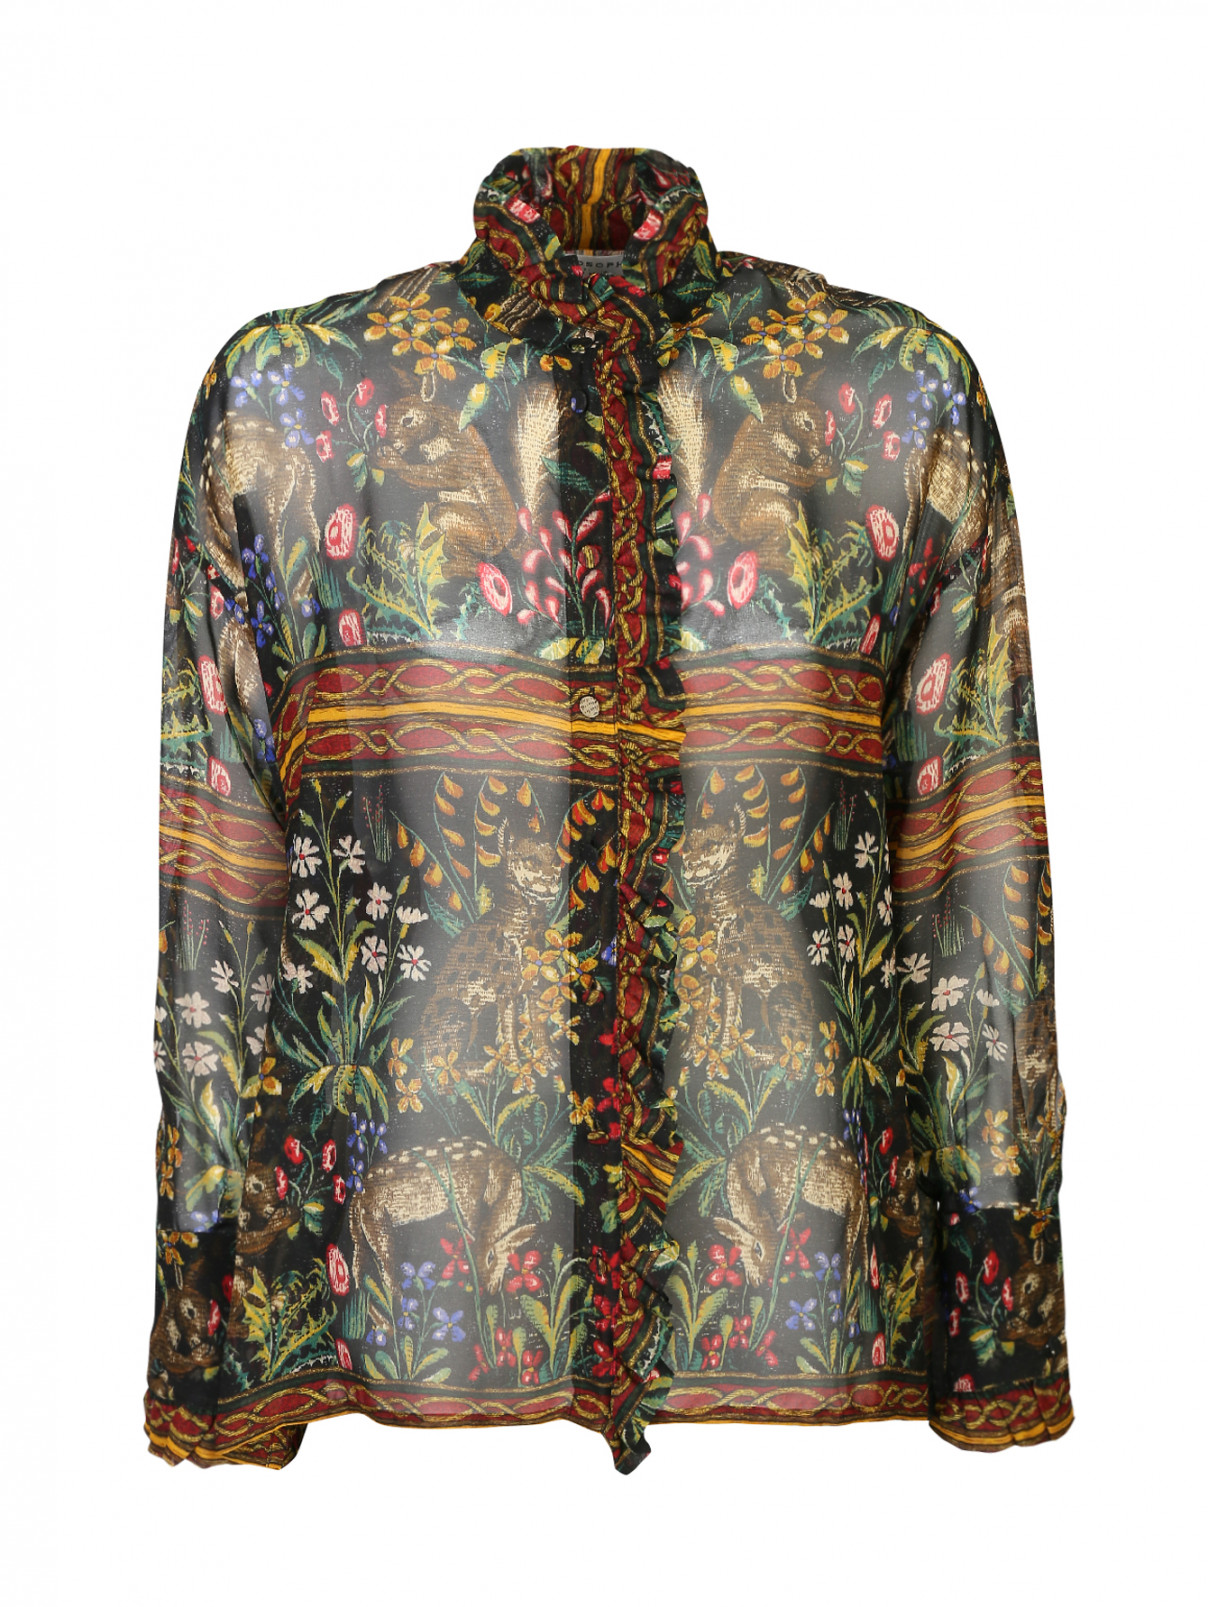 Блуза из вискозы, с цветочным принтом Philosophy di Lorenzo Serafini  –  Общий вид  – Цвет:  Мультиколор